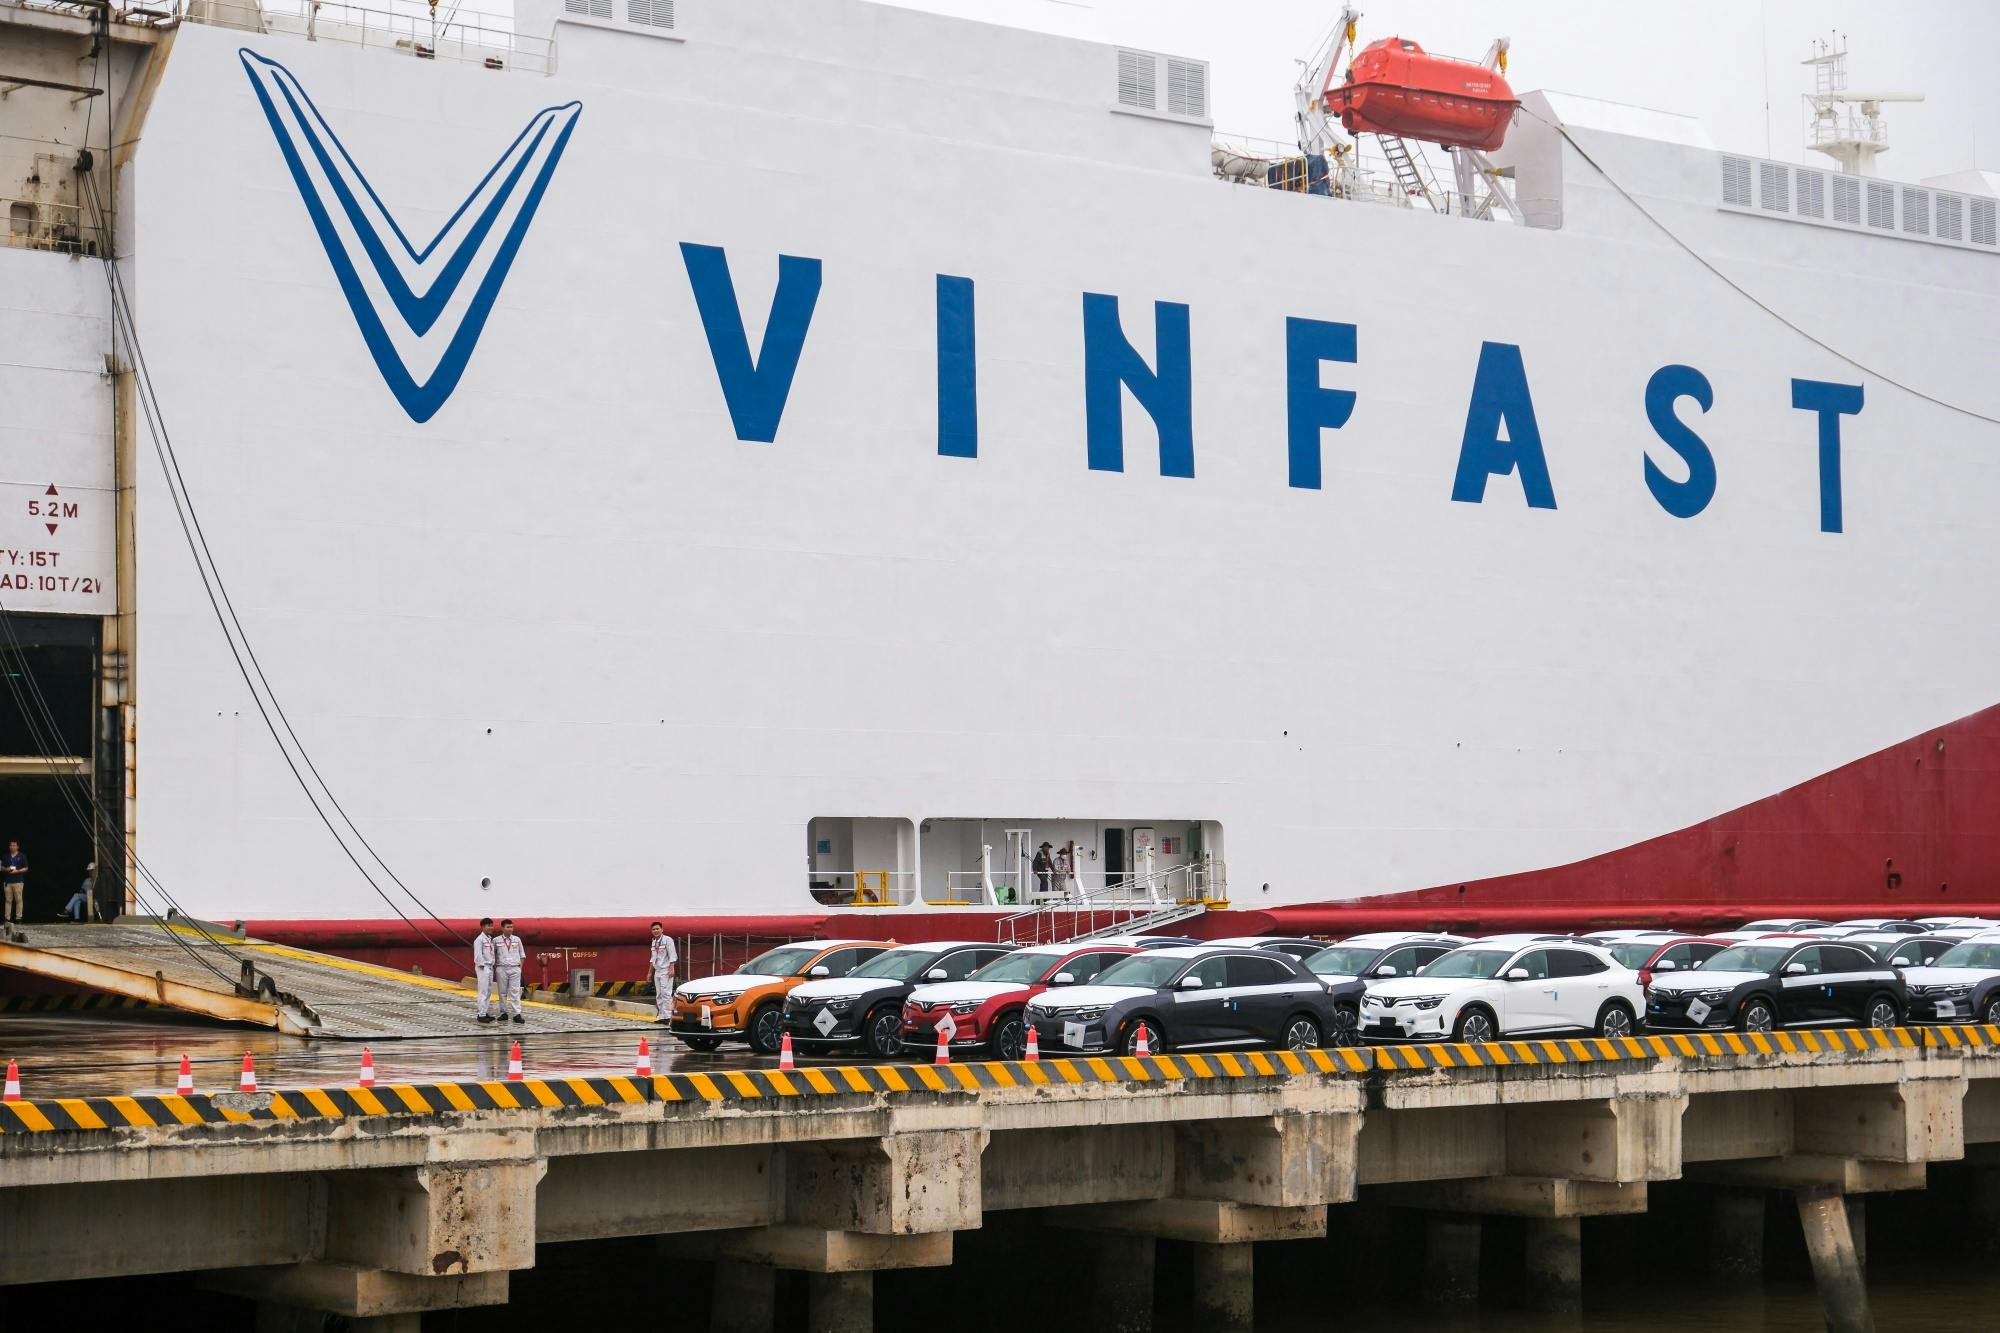 VinFast vươn tầm khu vực, huy động vốn lớn cho mục tiêu quốc tế